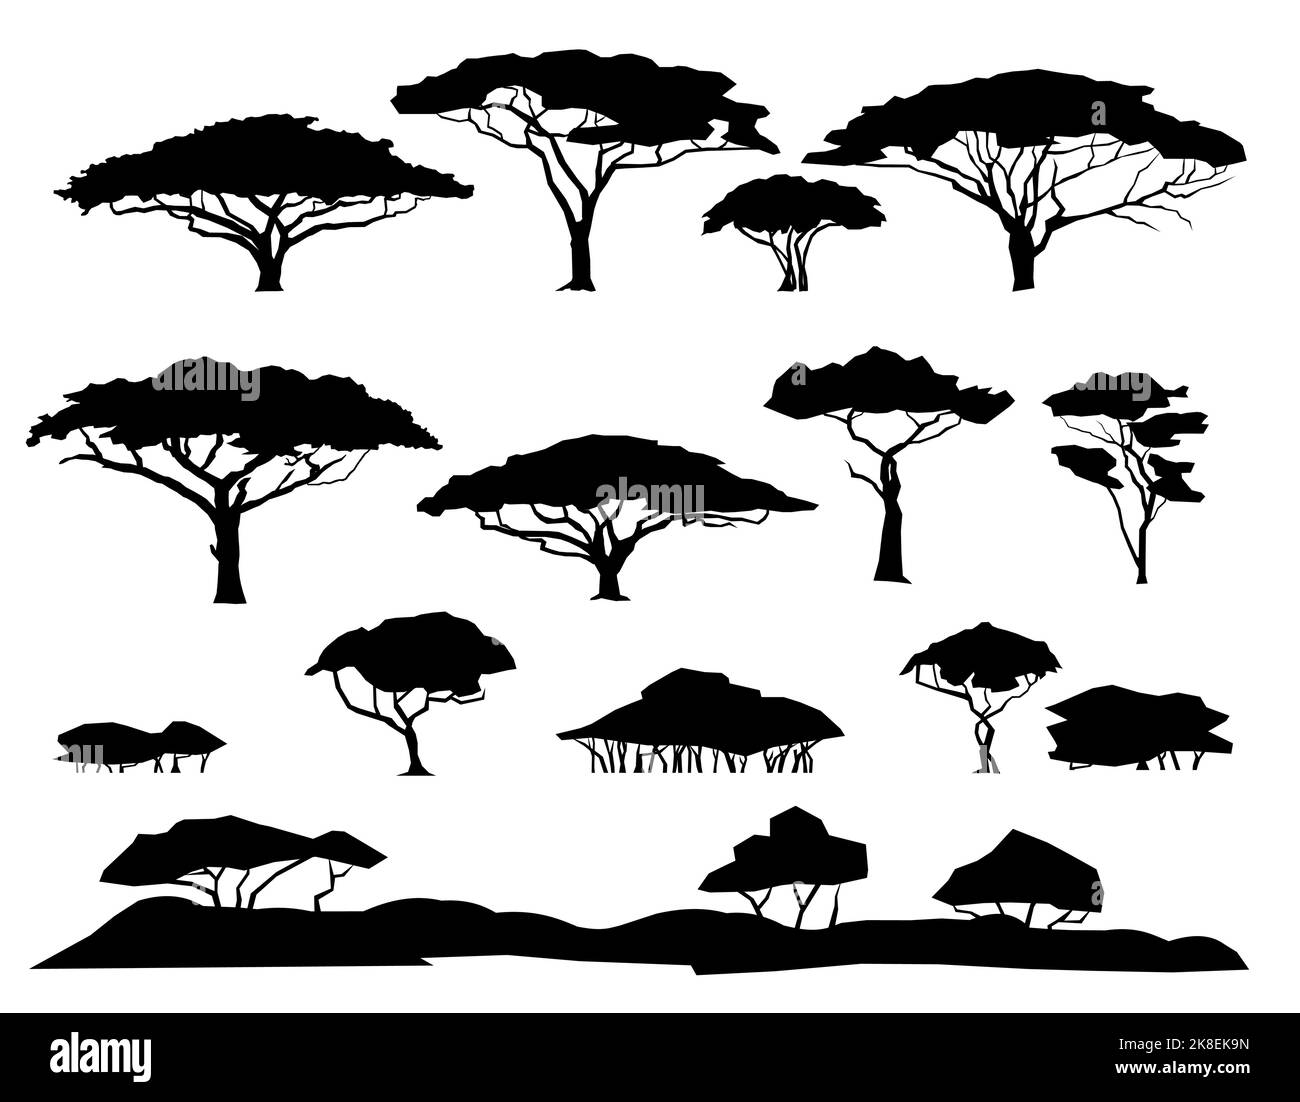 Ensemble de plantes. Paysage de savane africaine. Silhouette. Afrique acacia arbre. Isolé sur fond blanc. Vecteur Illustration de Vecteur